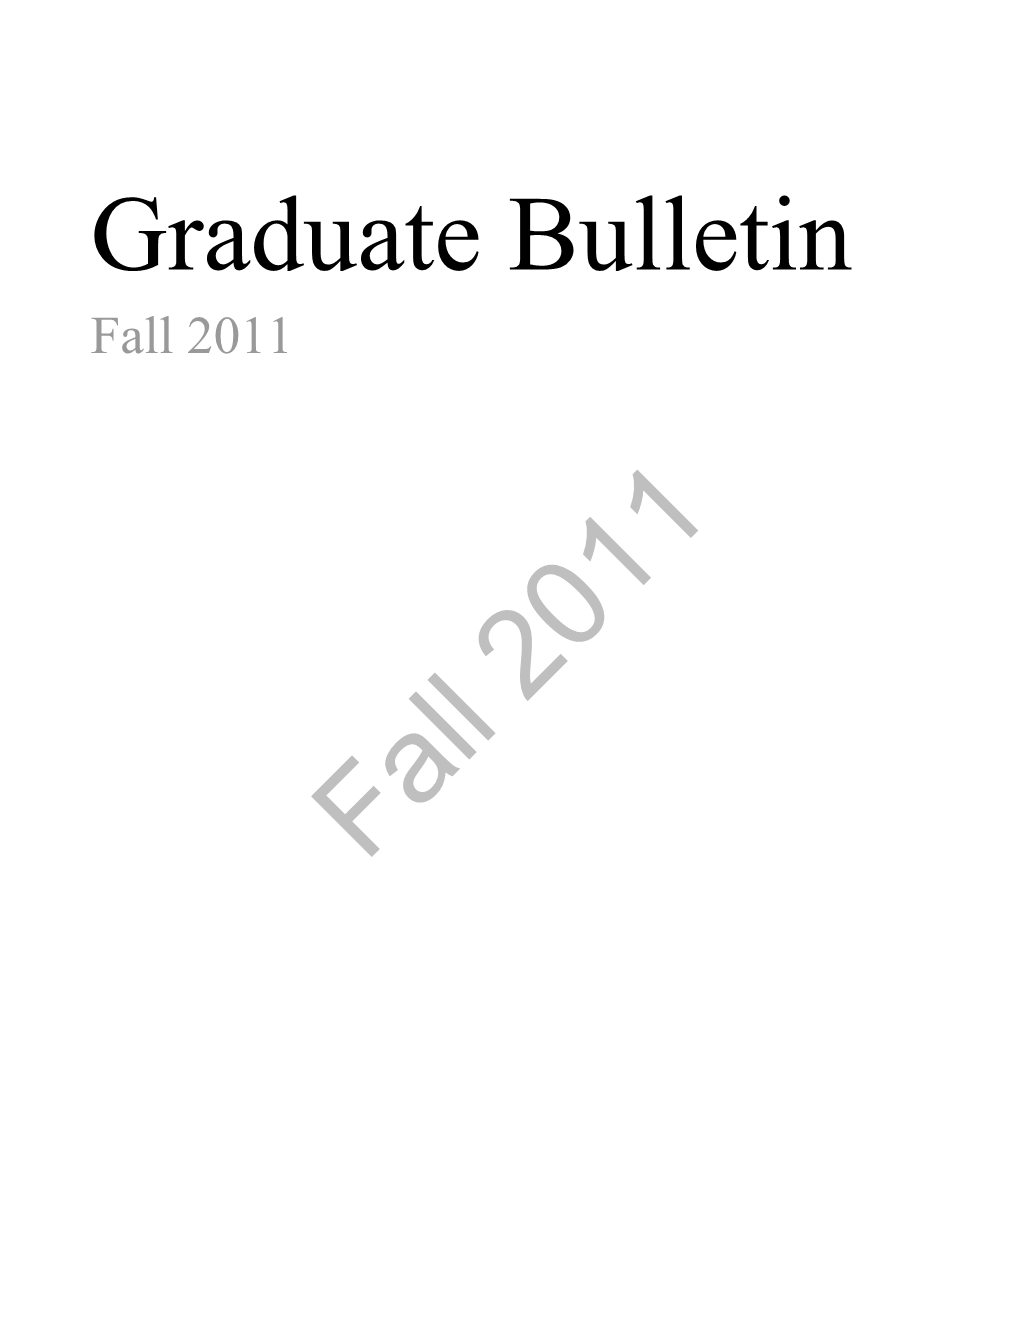 Graduate Bulletin Fall 2011